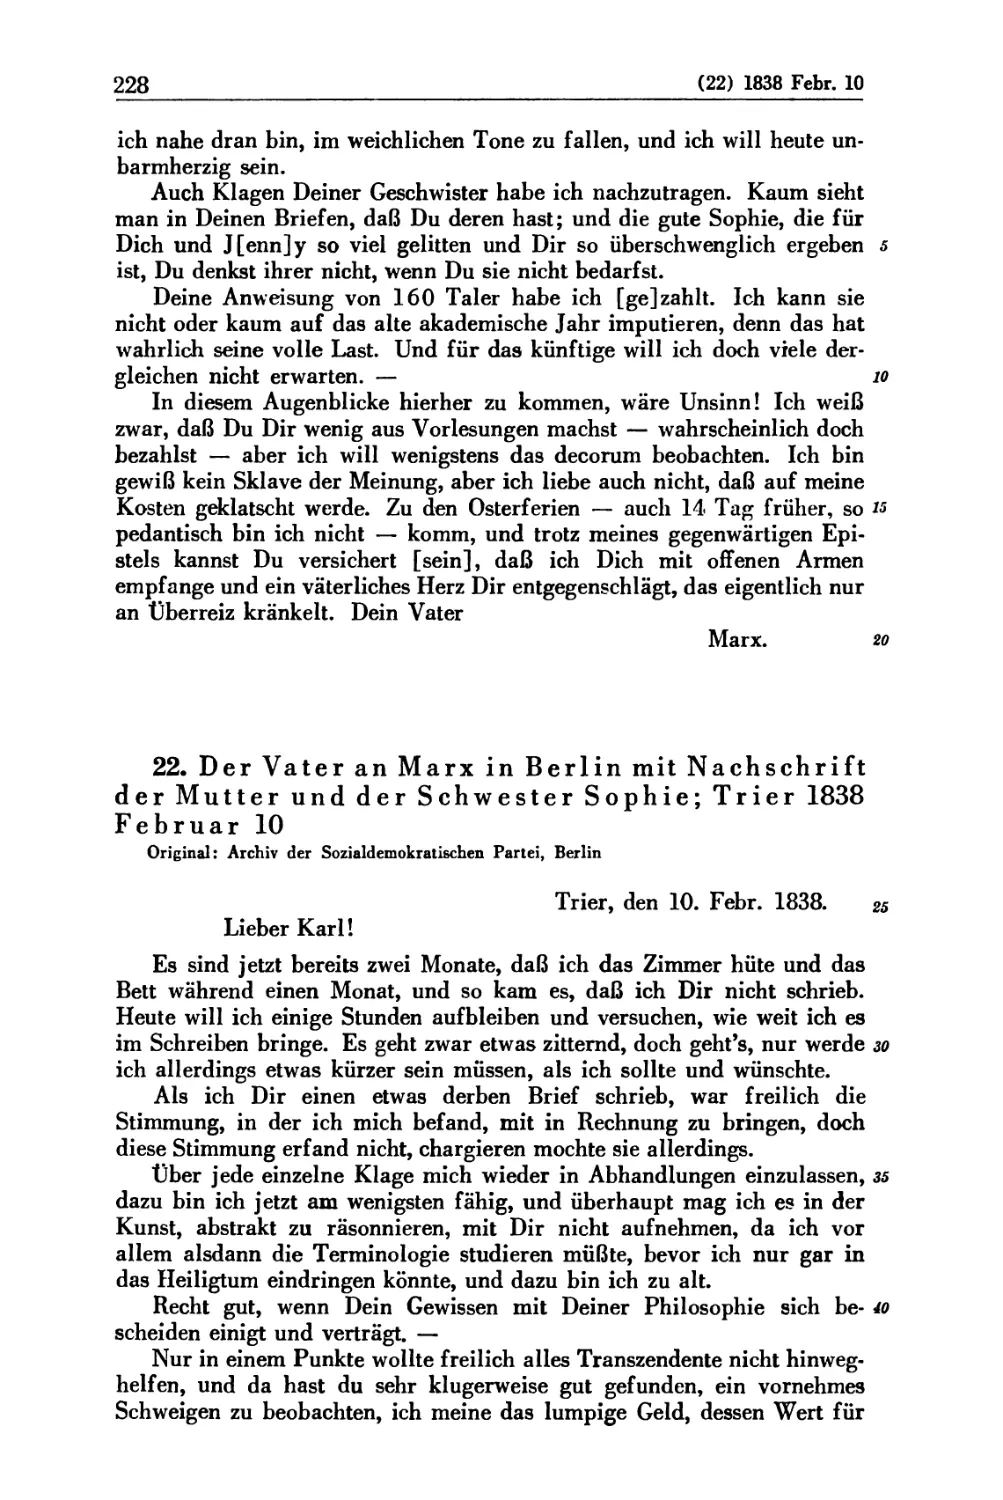 22. Der Vater an Marx in Berlin mit Nachschrift der Mutter und der Schwester Sophie; Trier 1838 Februar 10